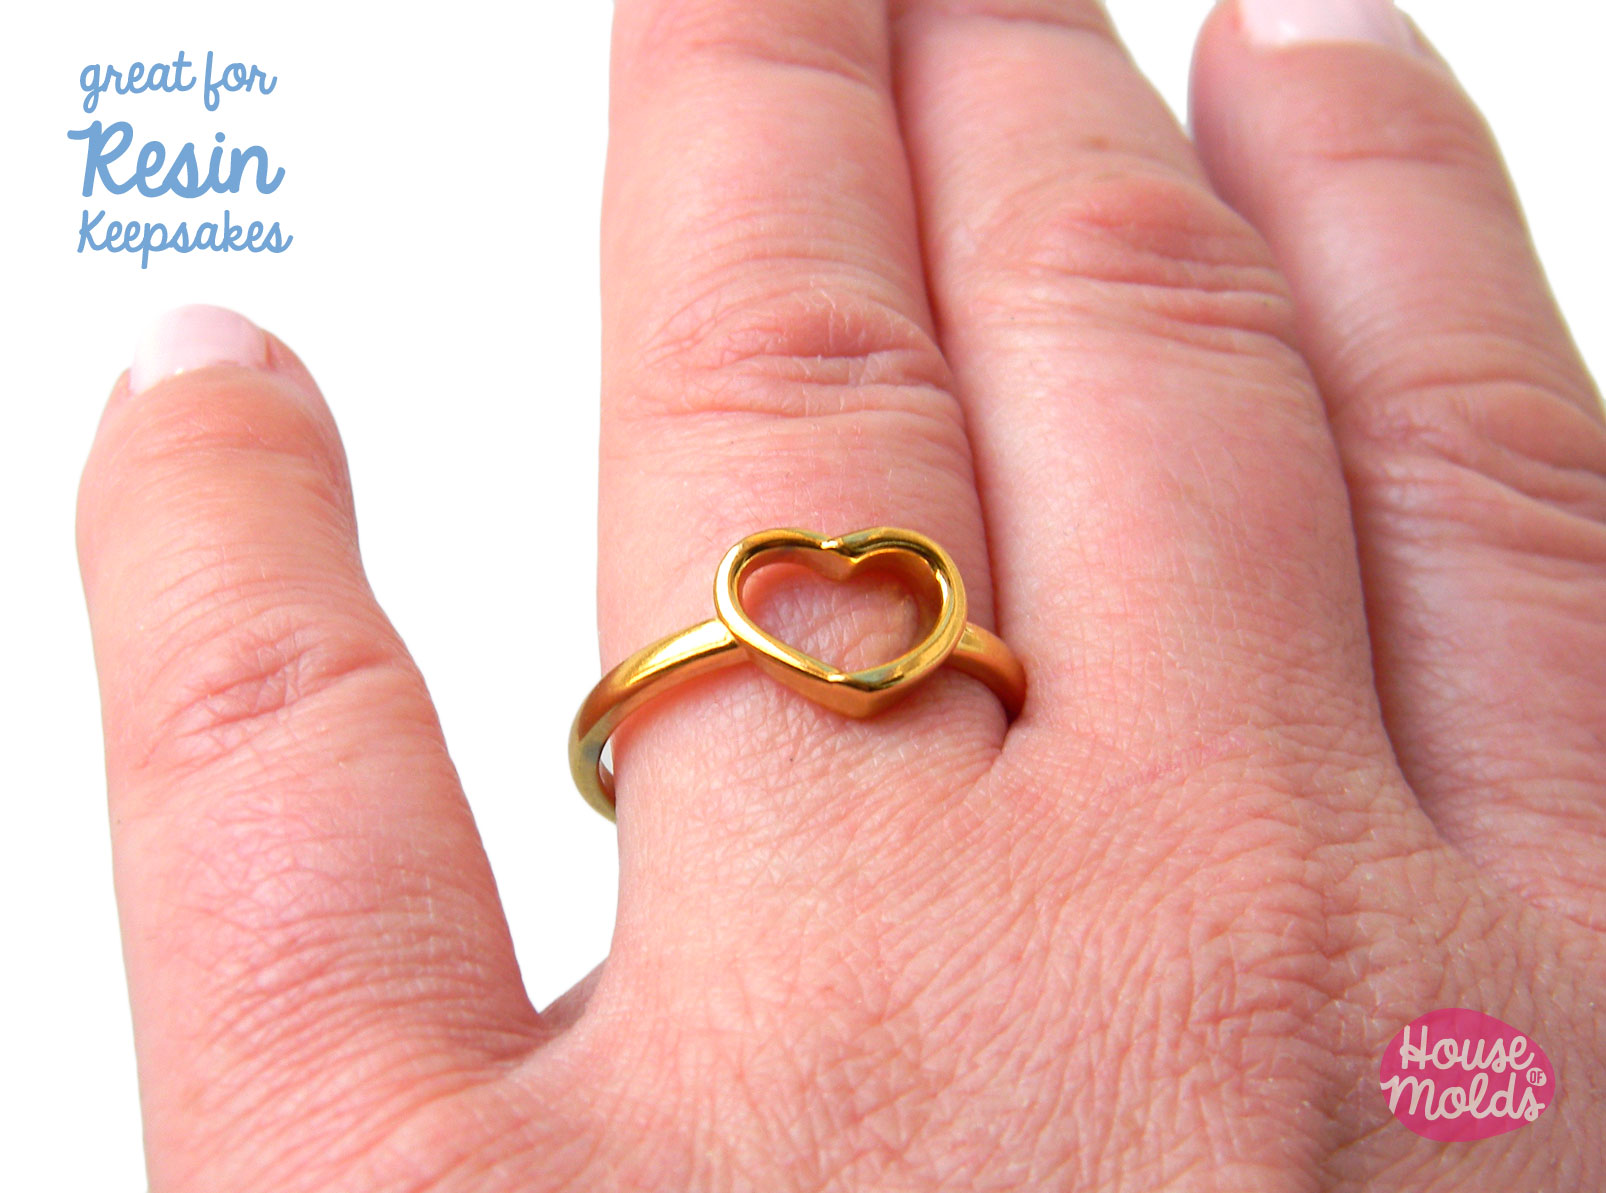 2.3 Gram 18K White Gold Ring for Wedding 1ct VVS Grade D Color Moissanite  Gold Ring 100% Real 18K Gold Moissanite Ring